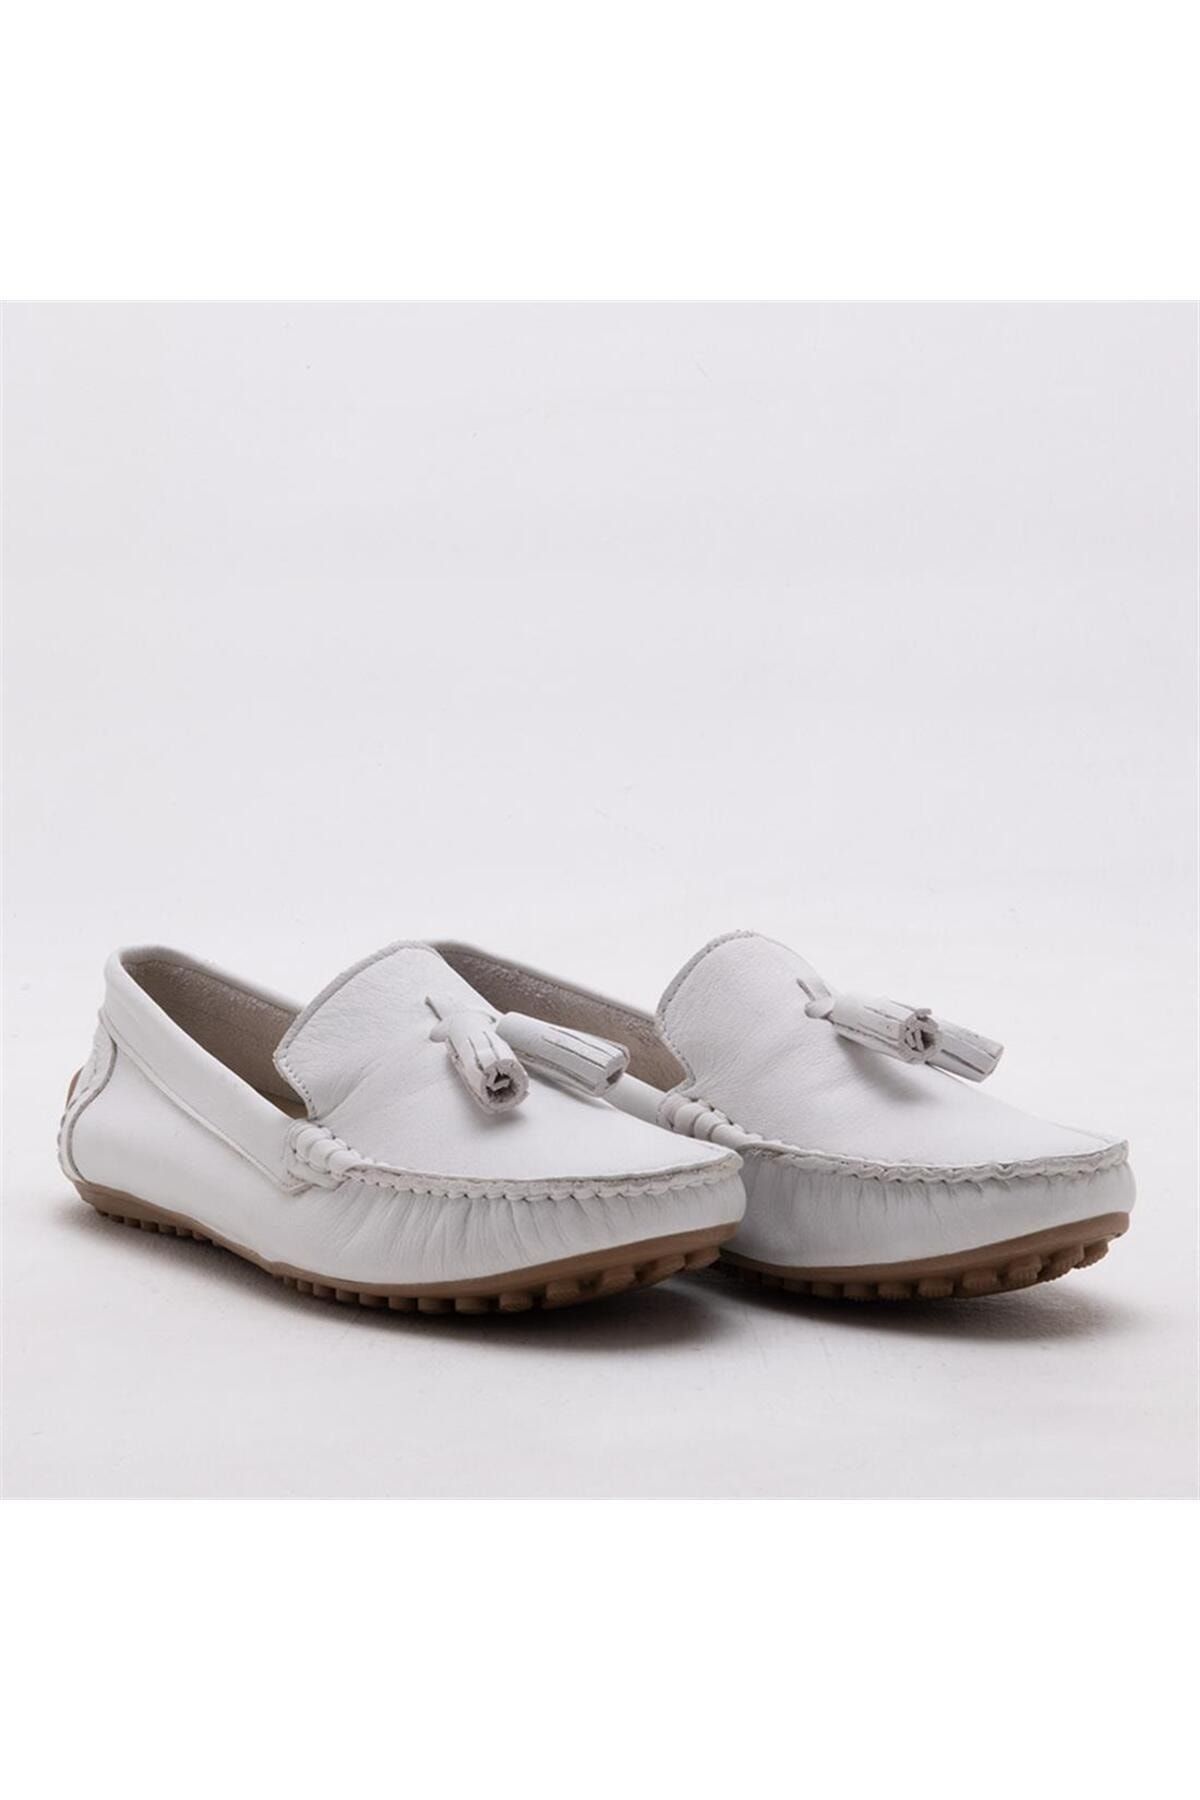 Louis Vuitton, Shoes, Louis Vuitton Black Suede Imola Tassel Loafers